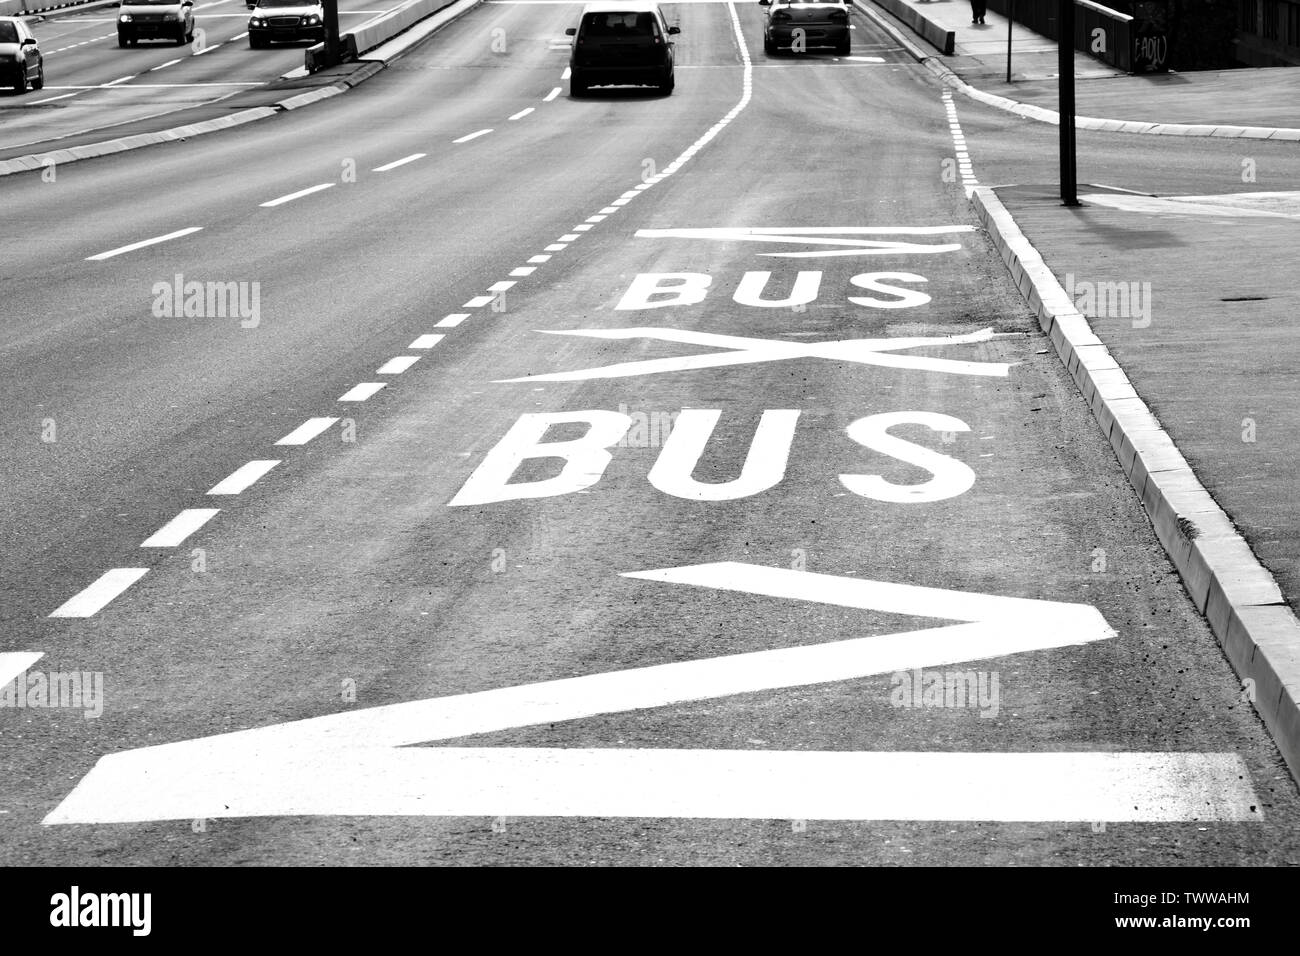 La superficie stradale iscrizioni presso la fermata degli autobus sulla strada di città in bianco e nero a contrasto elevato Foto Stock